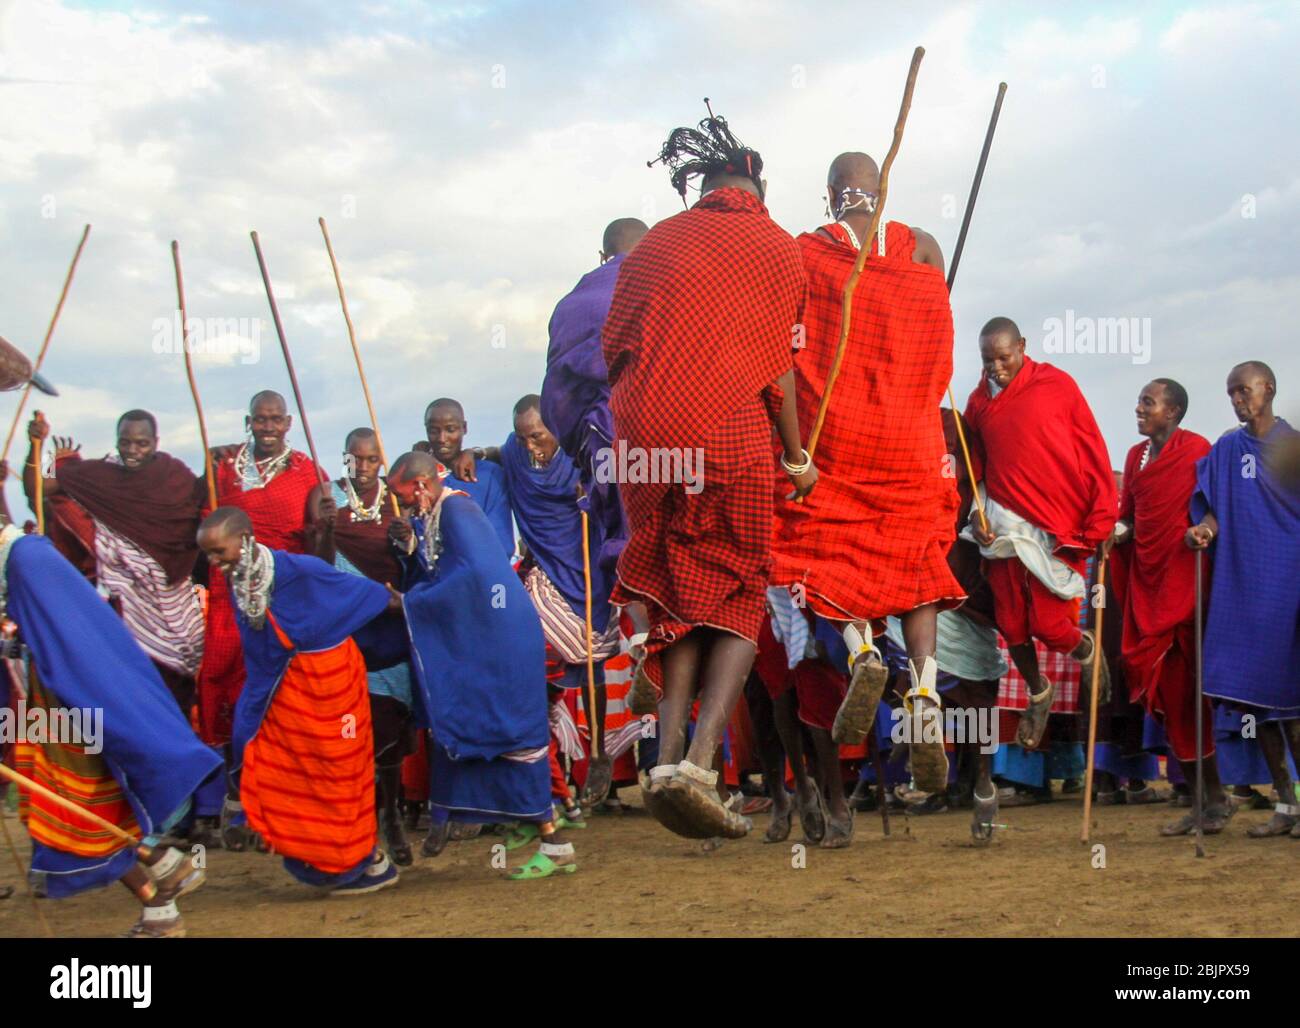 Danse tribale lors d'une cérémonie de Maasai Maasai est un groupe ethnique de personnes semi-nomades photographiées en Tanzanie Banque D'Images